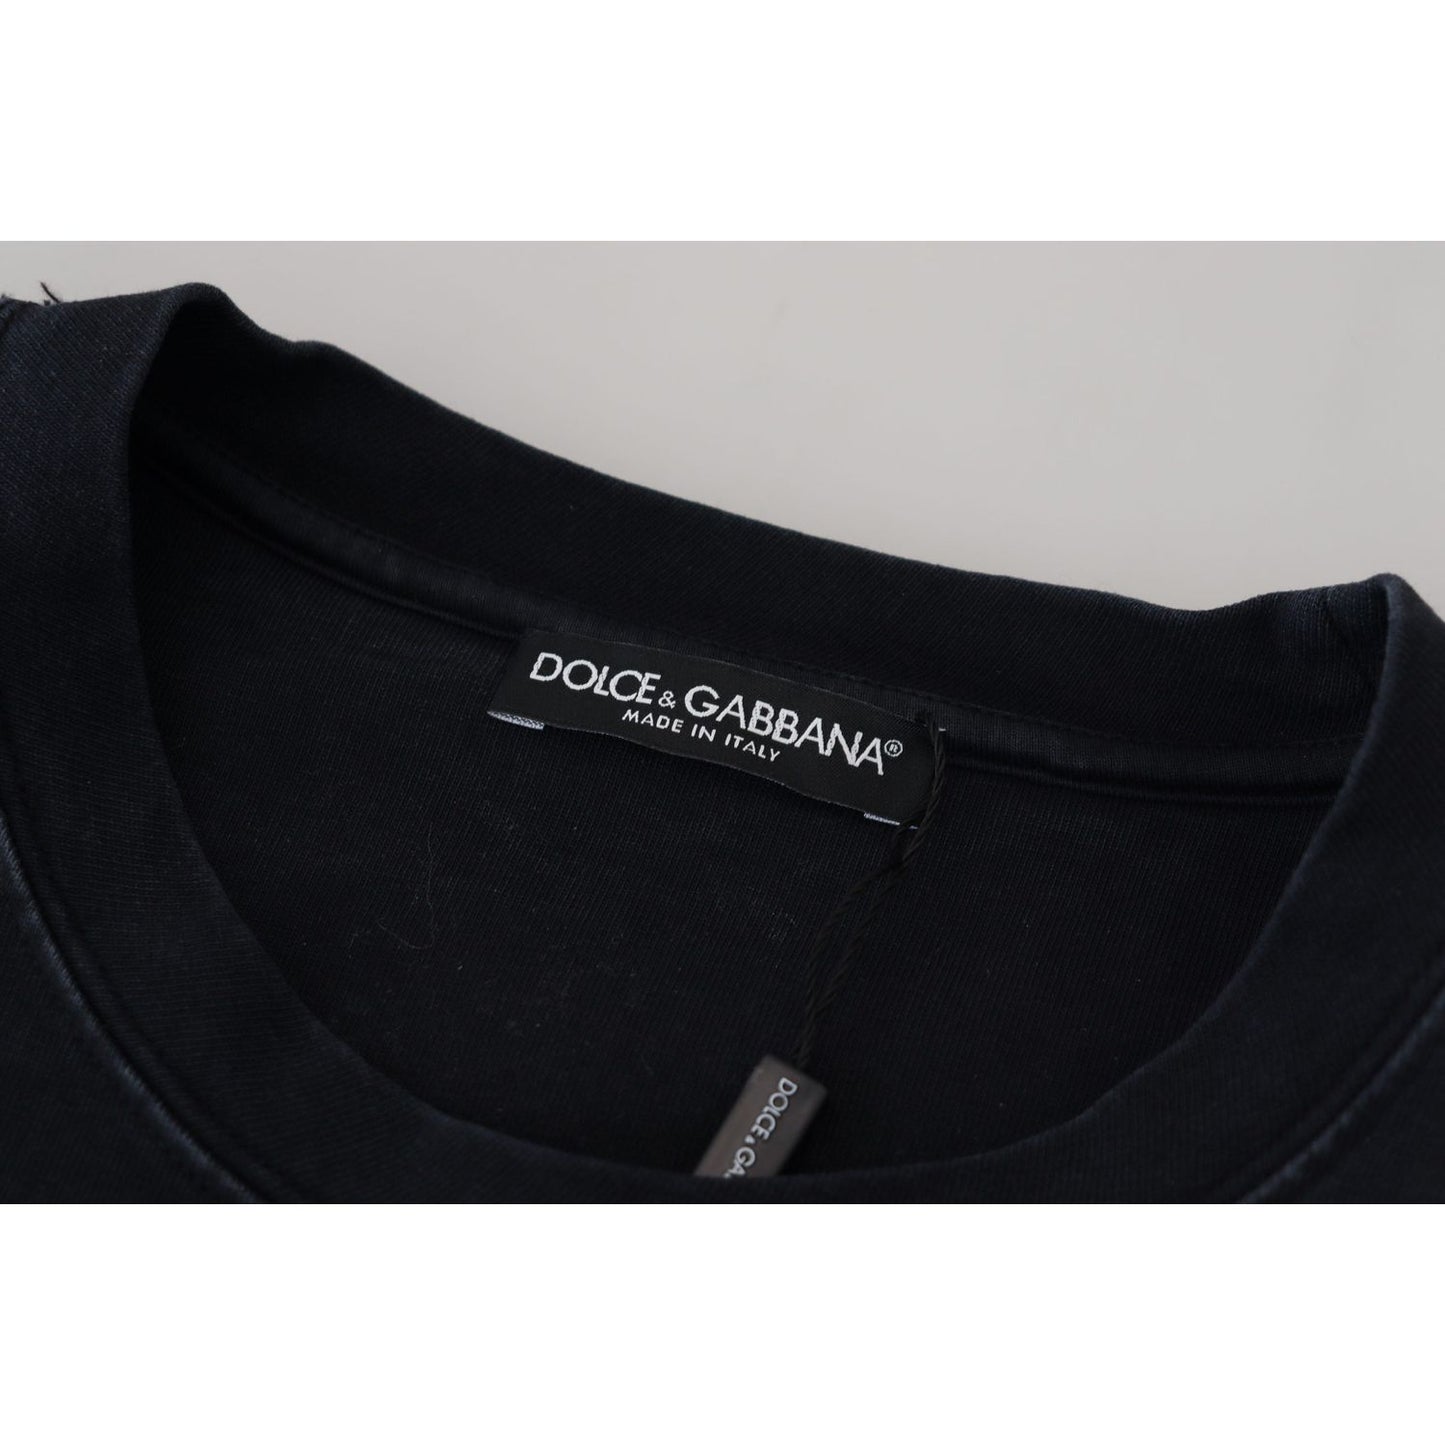 Dolce & Gabbana | Elegant Cotton Round Neck Tee with Print| McRichard Designer Brands   